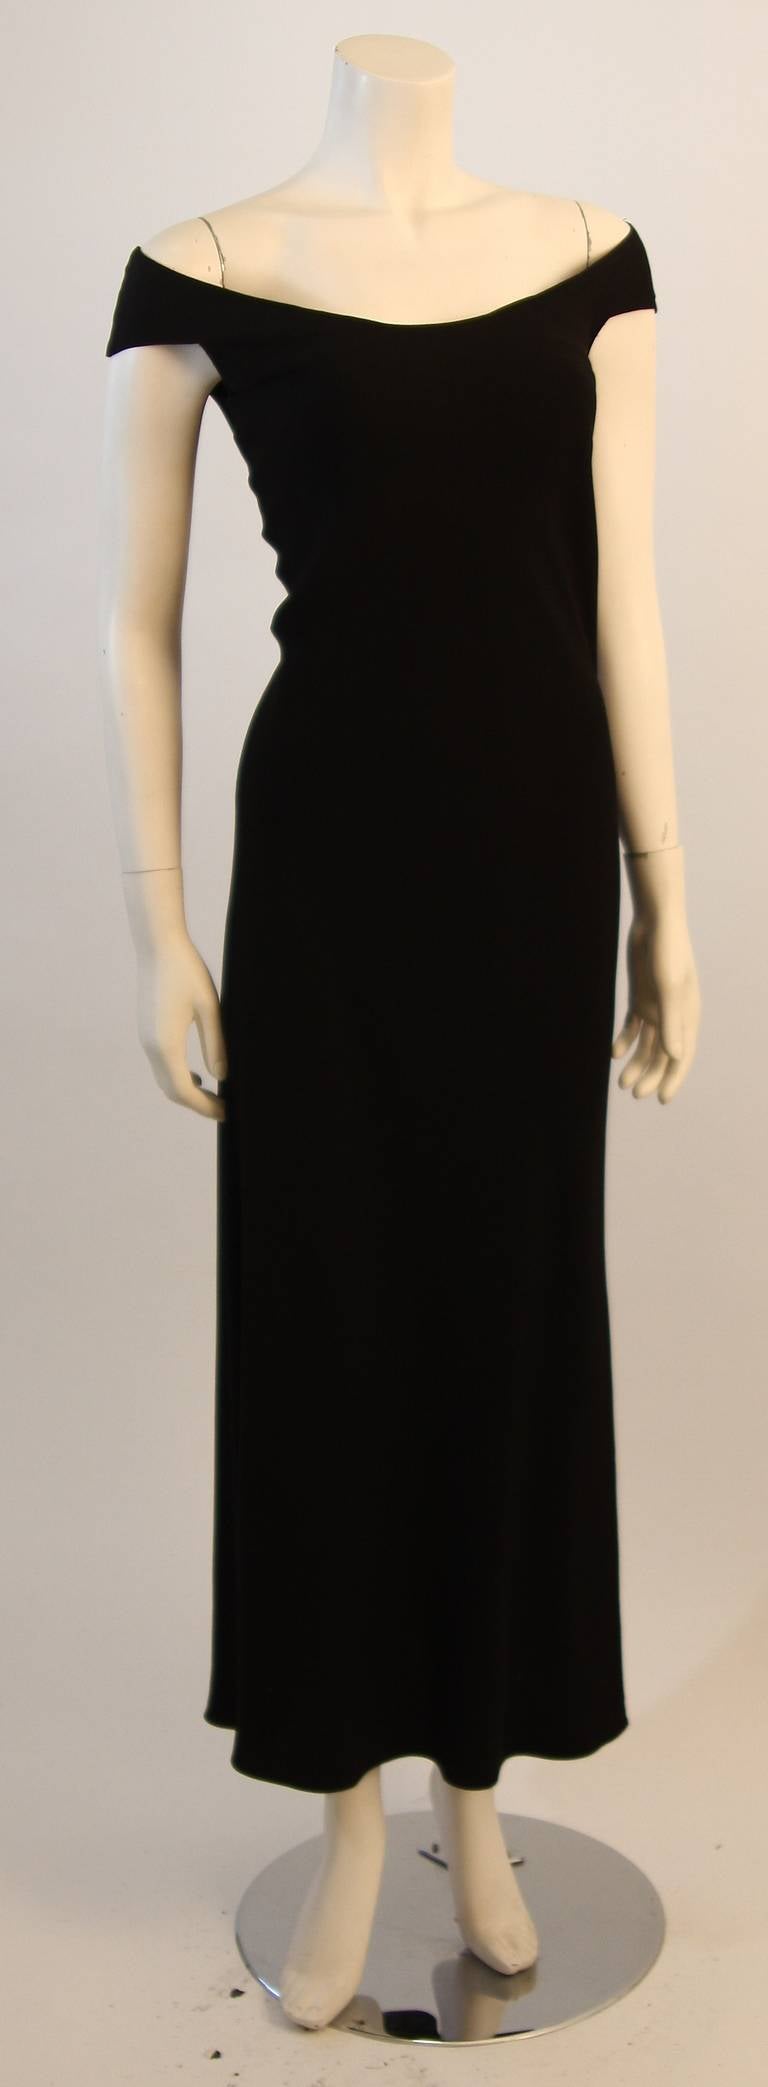 Women's John Galliano Black Bias Cut Gown Size 8